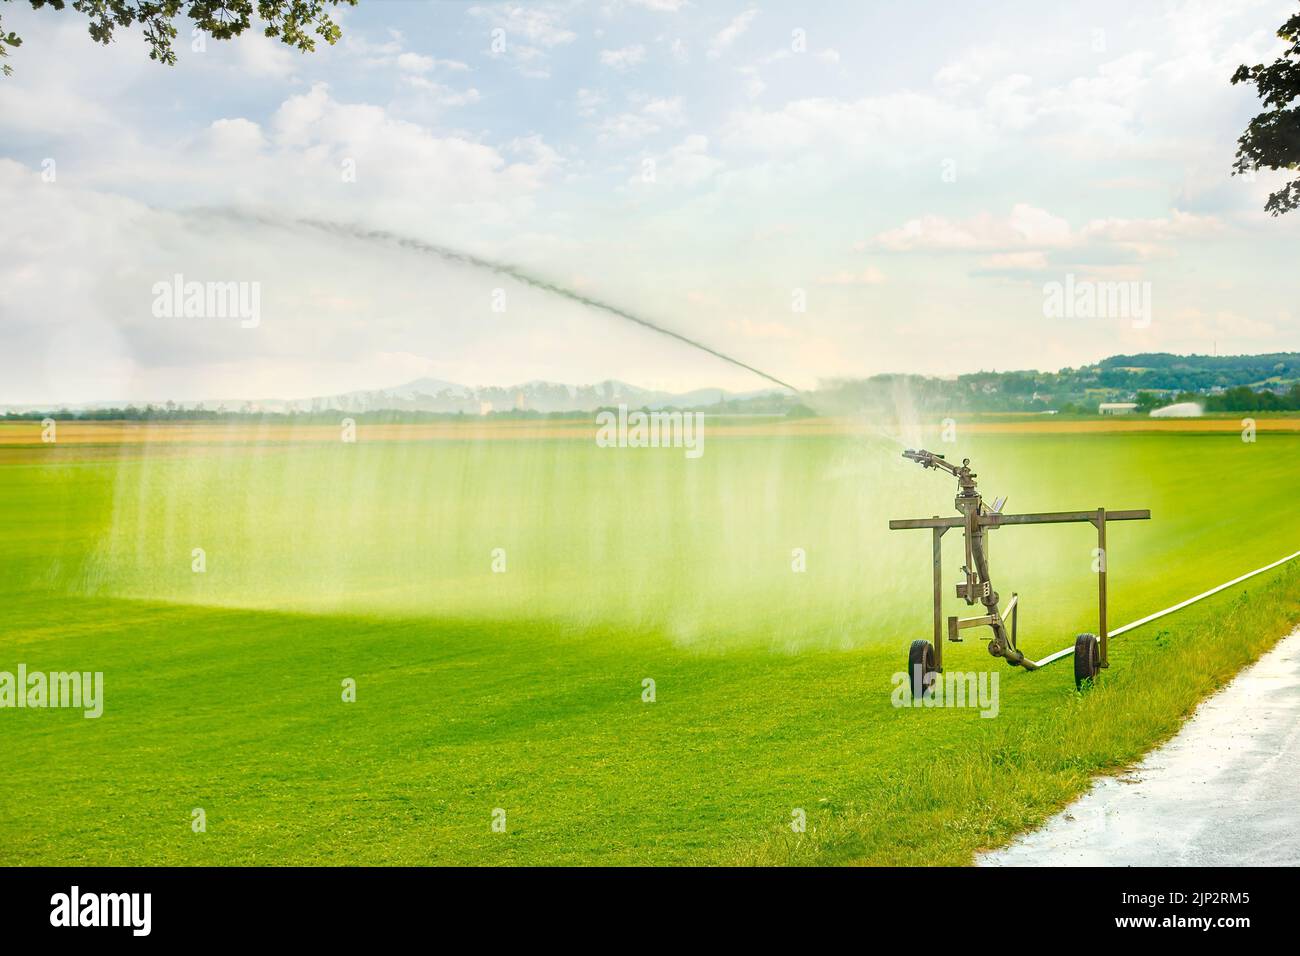 L'herbe verte obtient de l'eau en utilisant un système d'arrosage avec lanceur automoteur dans le champ de l'agriculteur le jour ensoleillé. Banque D'Images